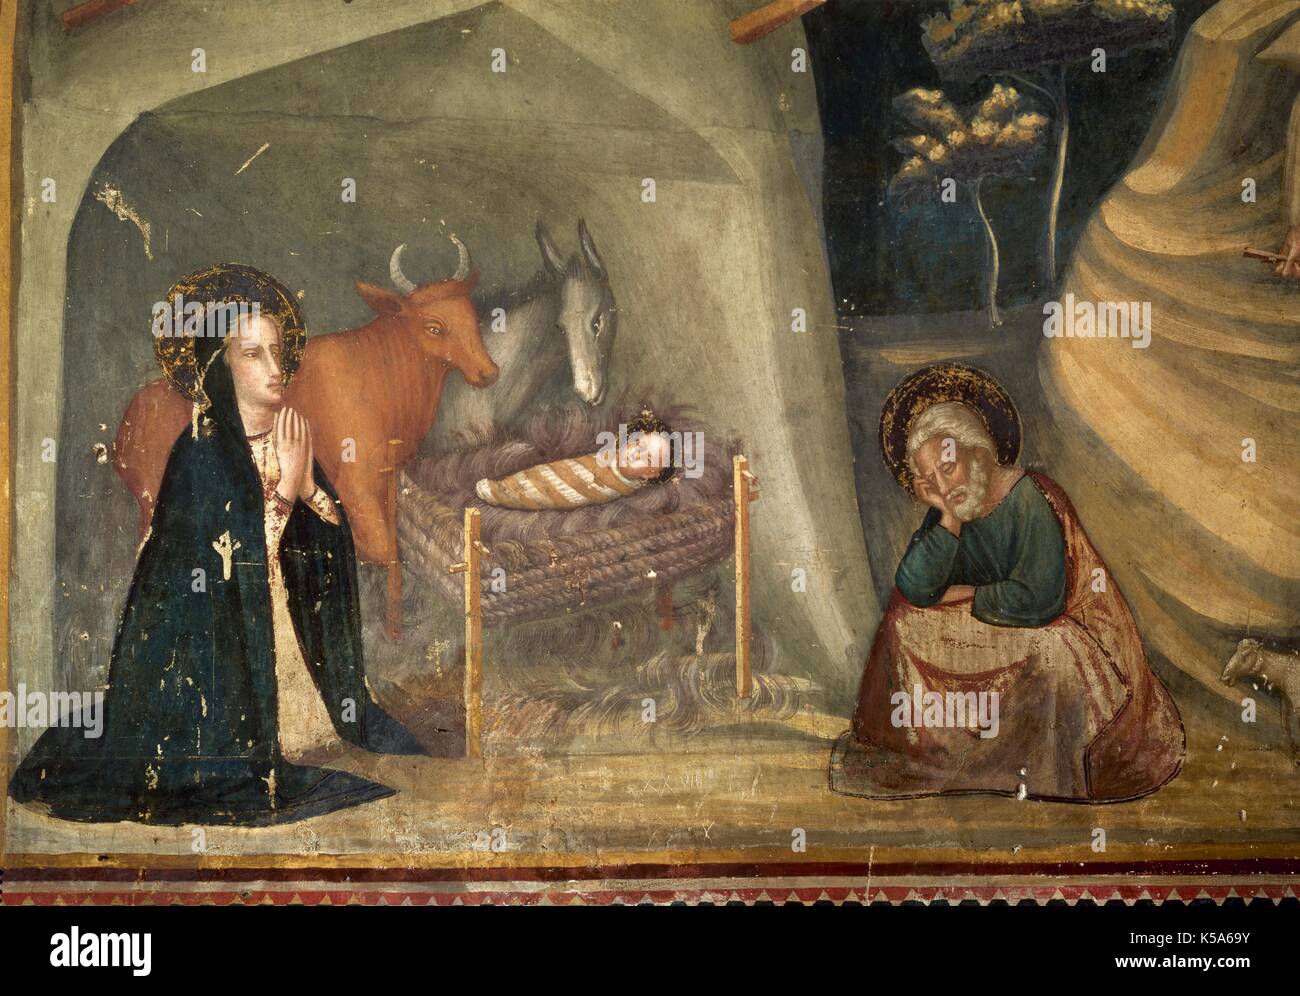 El gótico. El siglo XIV. Jaume Ferrer Bassa (1209-1348). Pintor español.  Los gozos de la Virgen. Pinturas entre 1343-1346 ordenada por la abadesa  Francesca Saportella. Escena de la Natividad. La pintura de